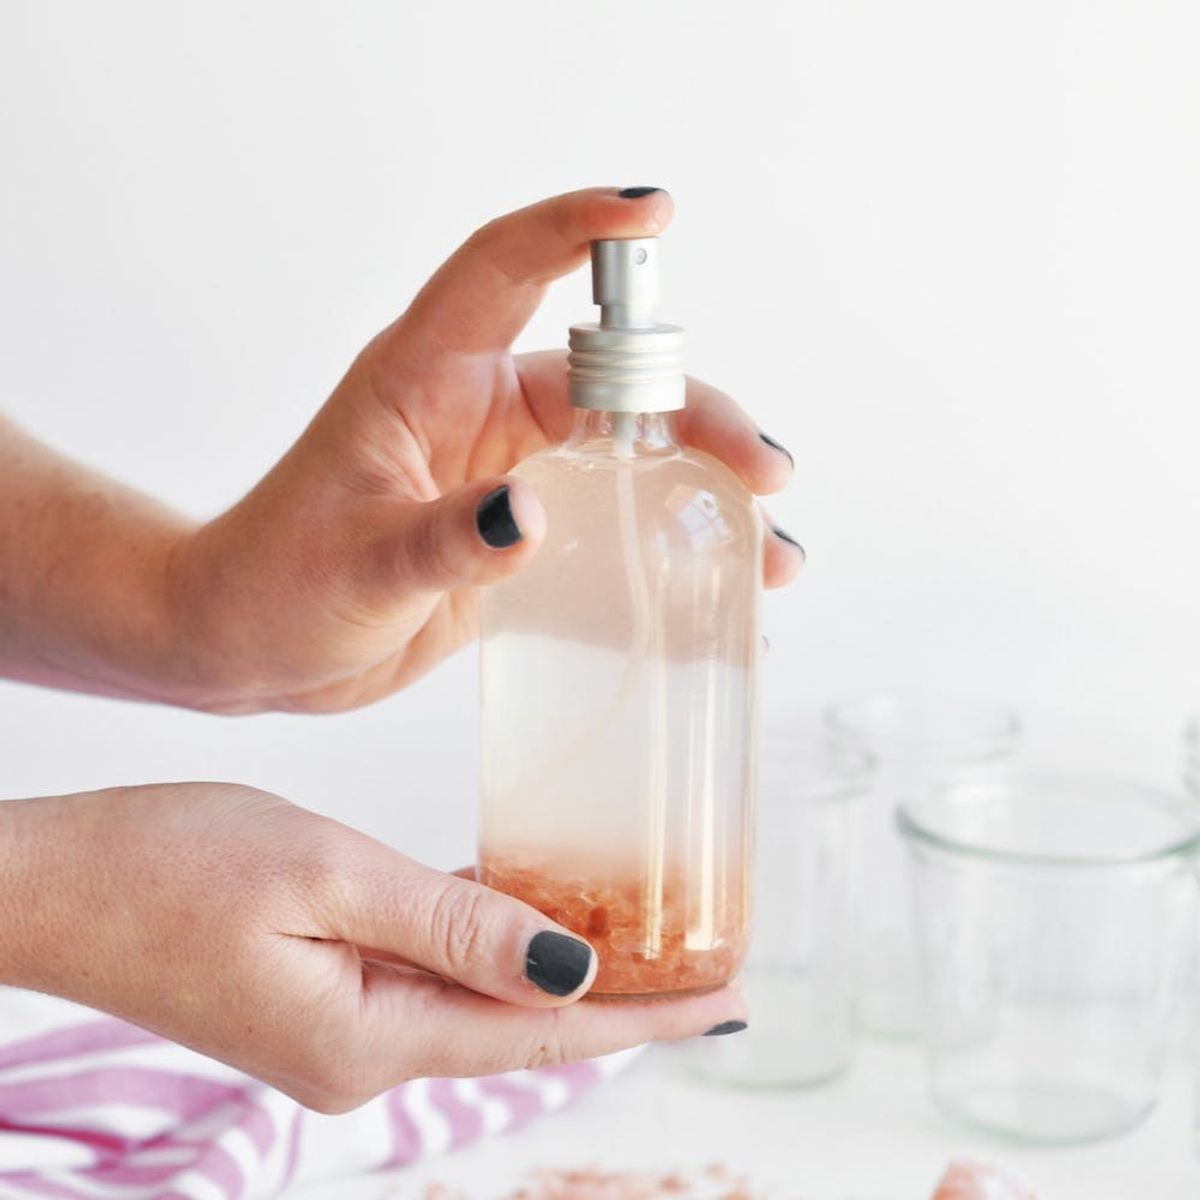 Eau de DIY: 15 Perfumes and Body Sprays You Can Actually Make